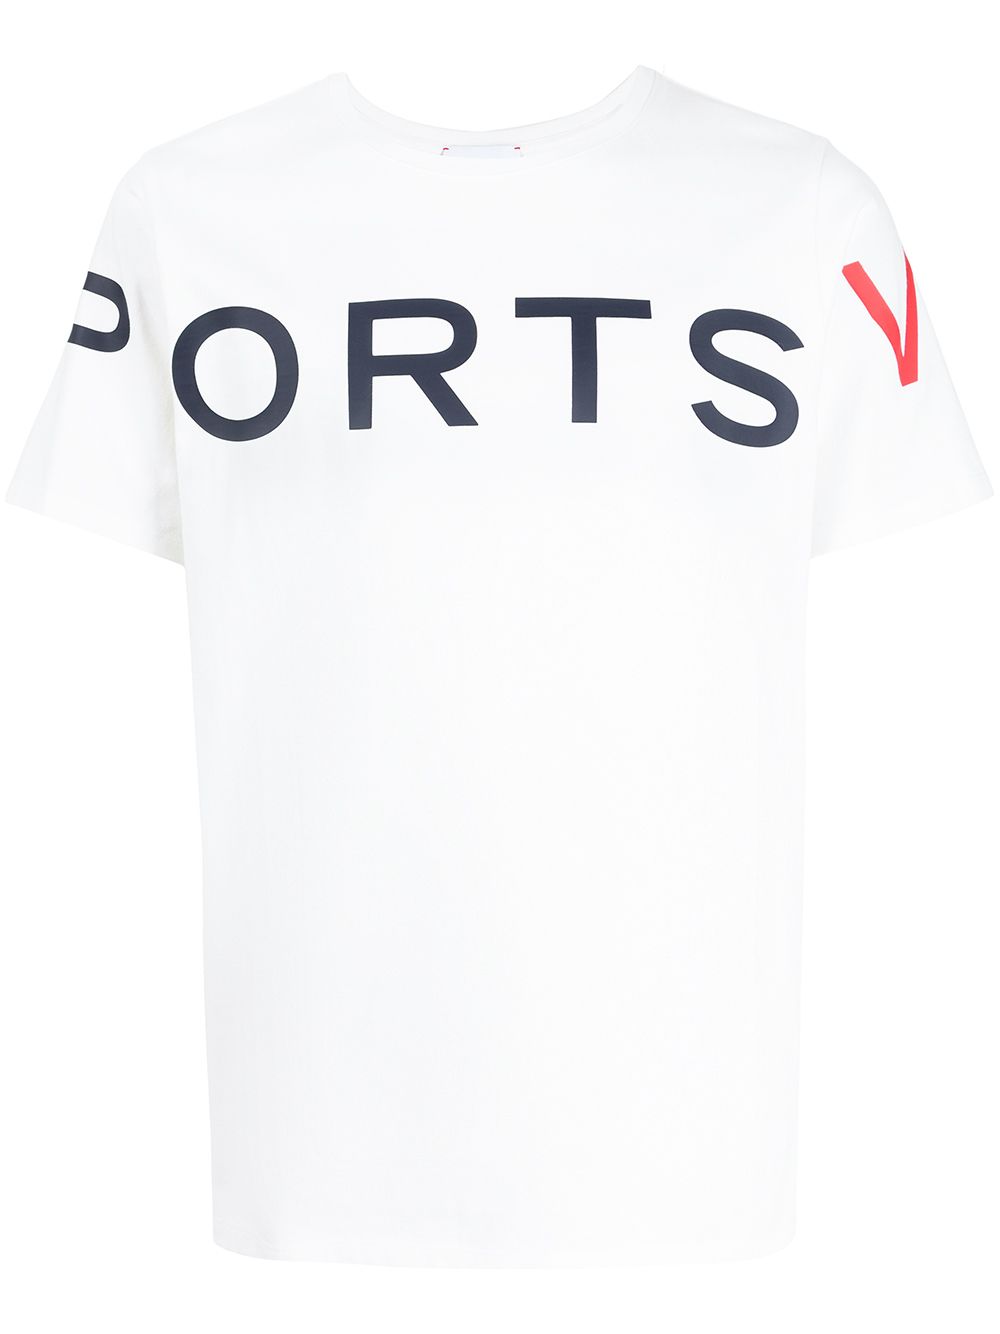 фото Ports v футболка с логотипом